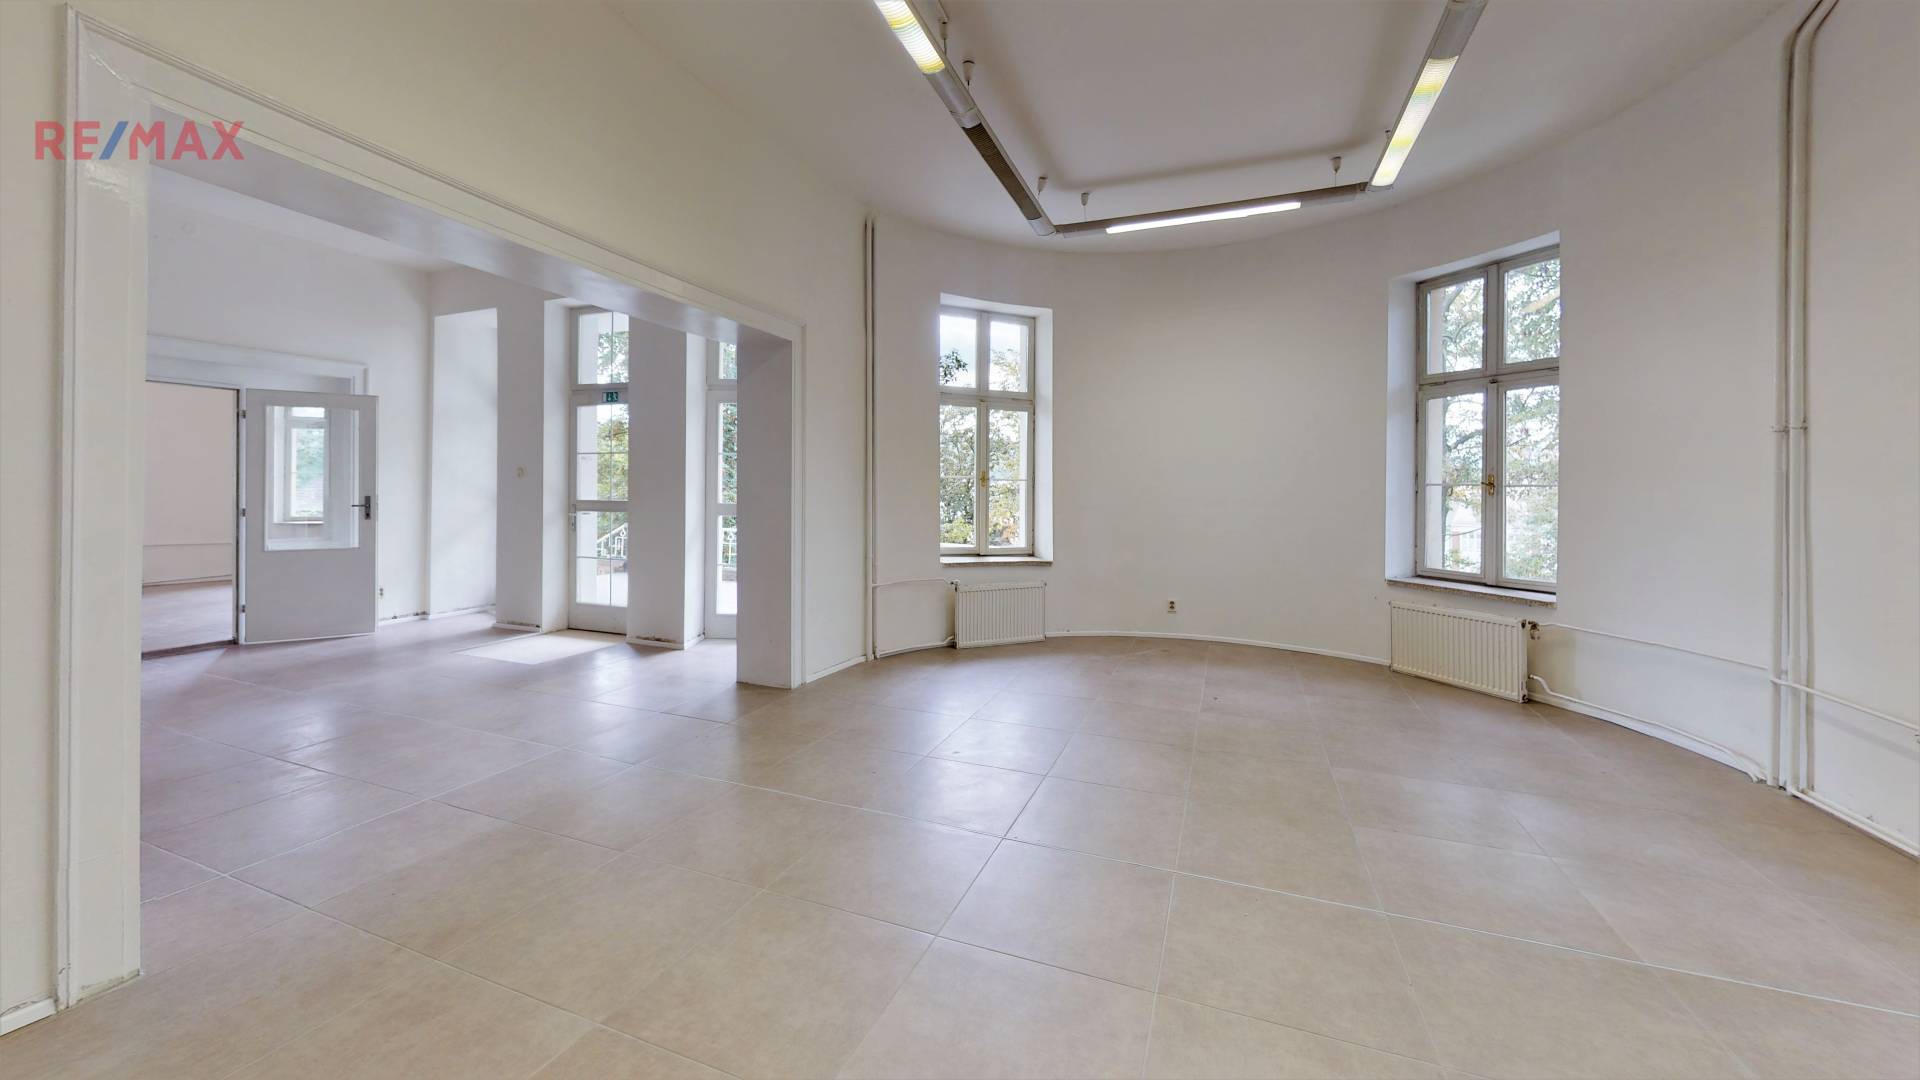 Prodej komerčního objektu (administrativní budova), 1300 m2, Ústí nad Labem